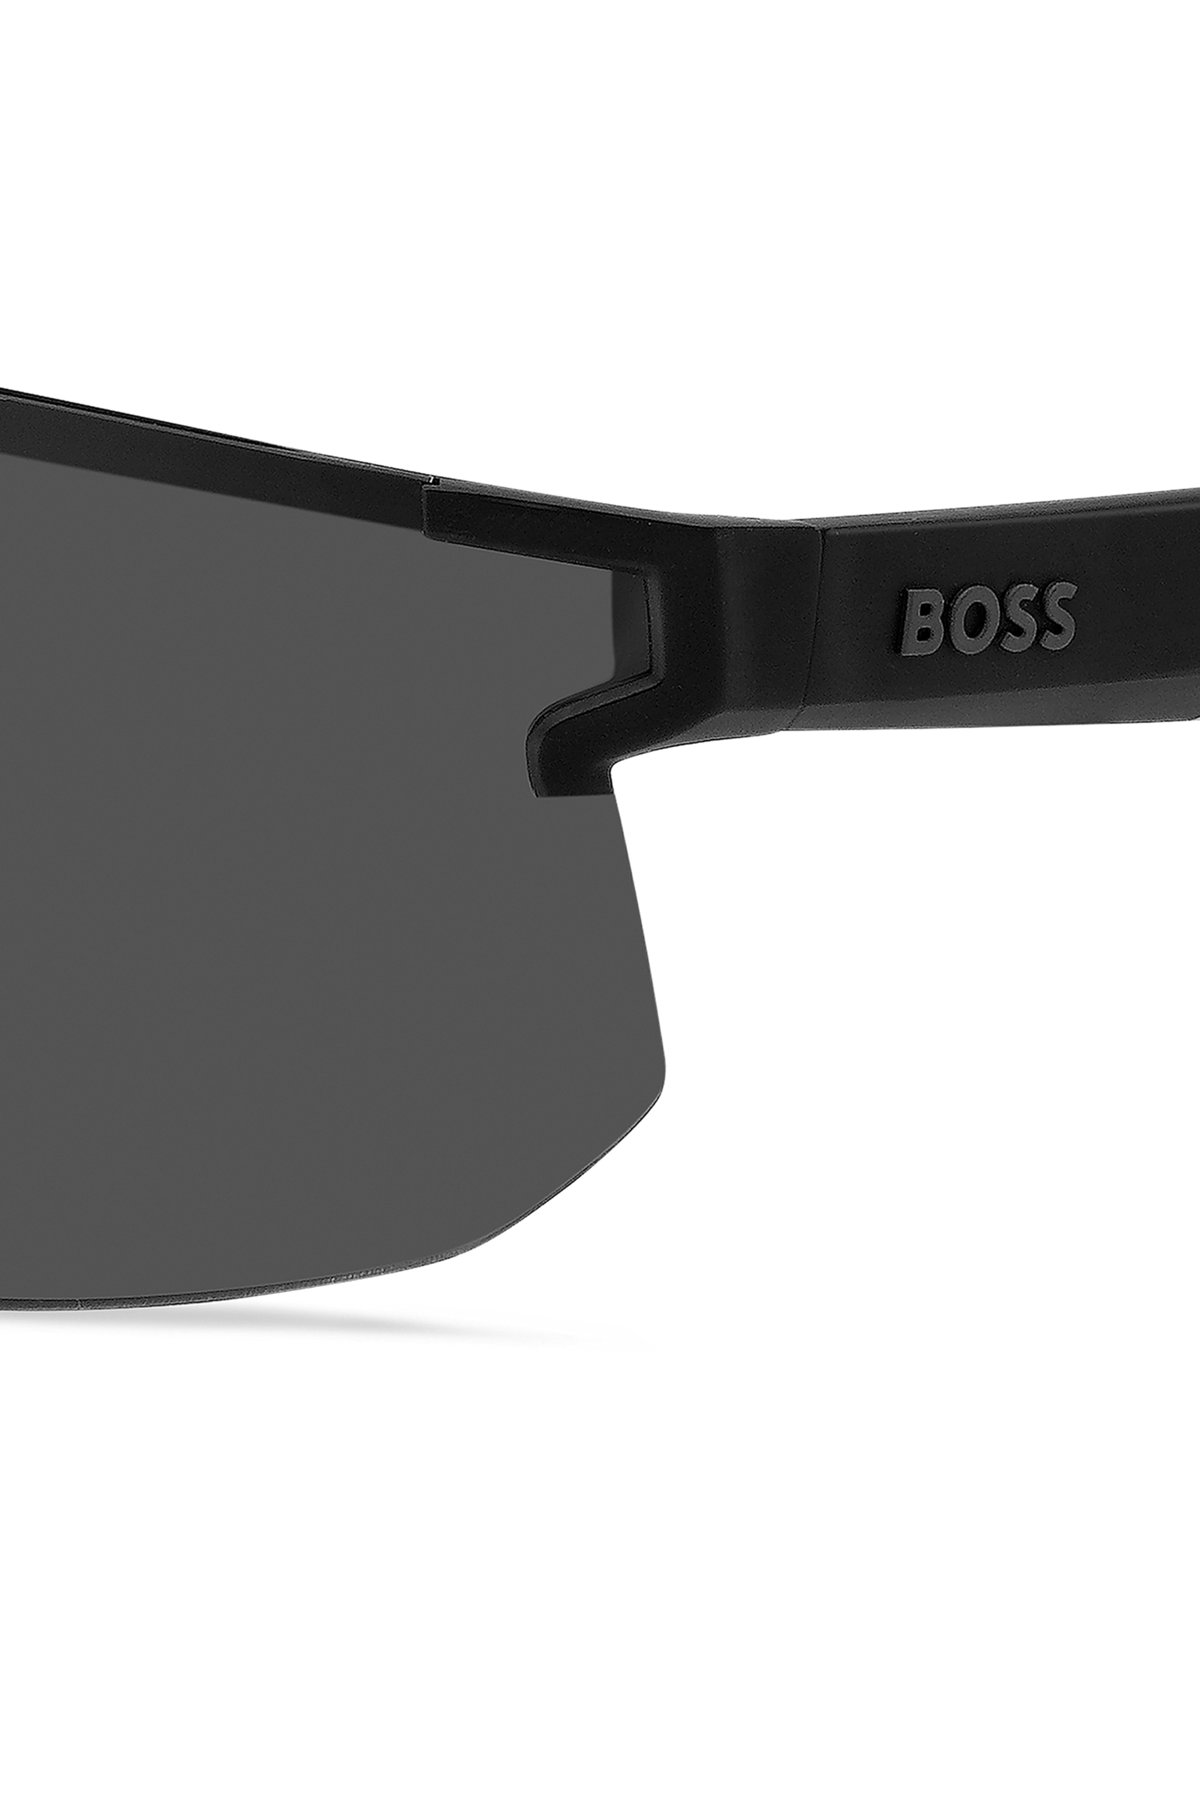 Schwarze Mask-Sonnenbrille mit Logos an Bügeln und Steg, Assorted-Pre-Pack